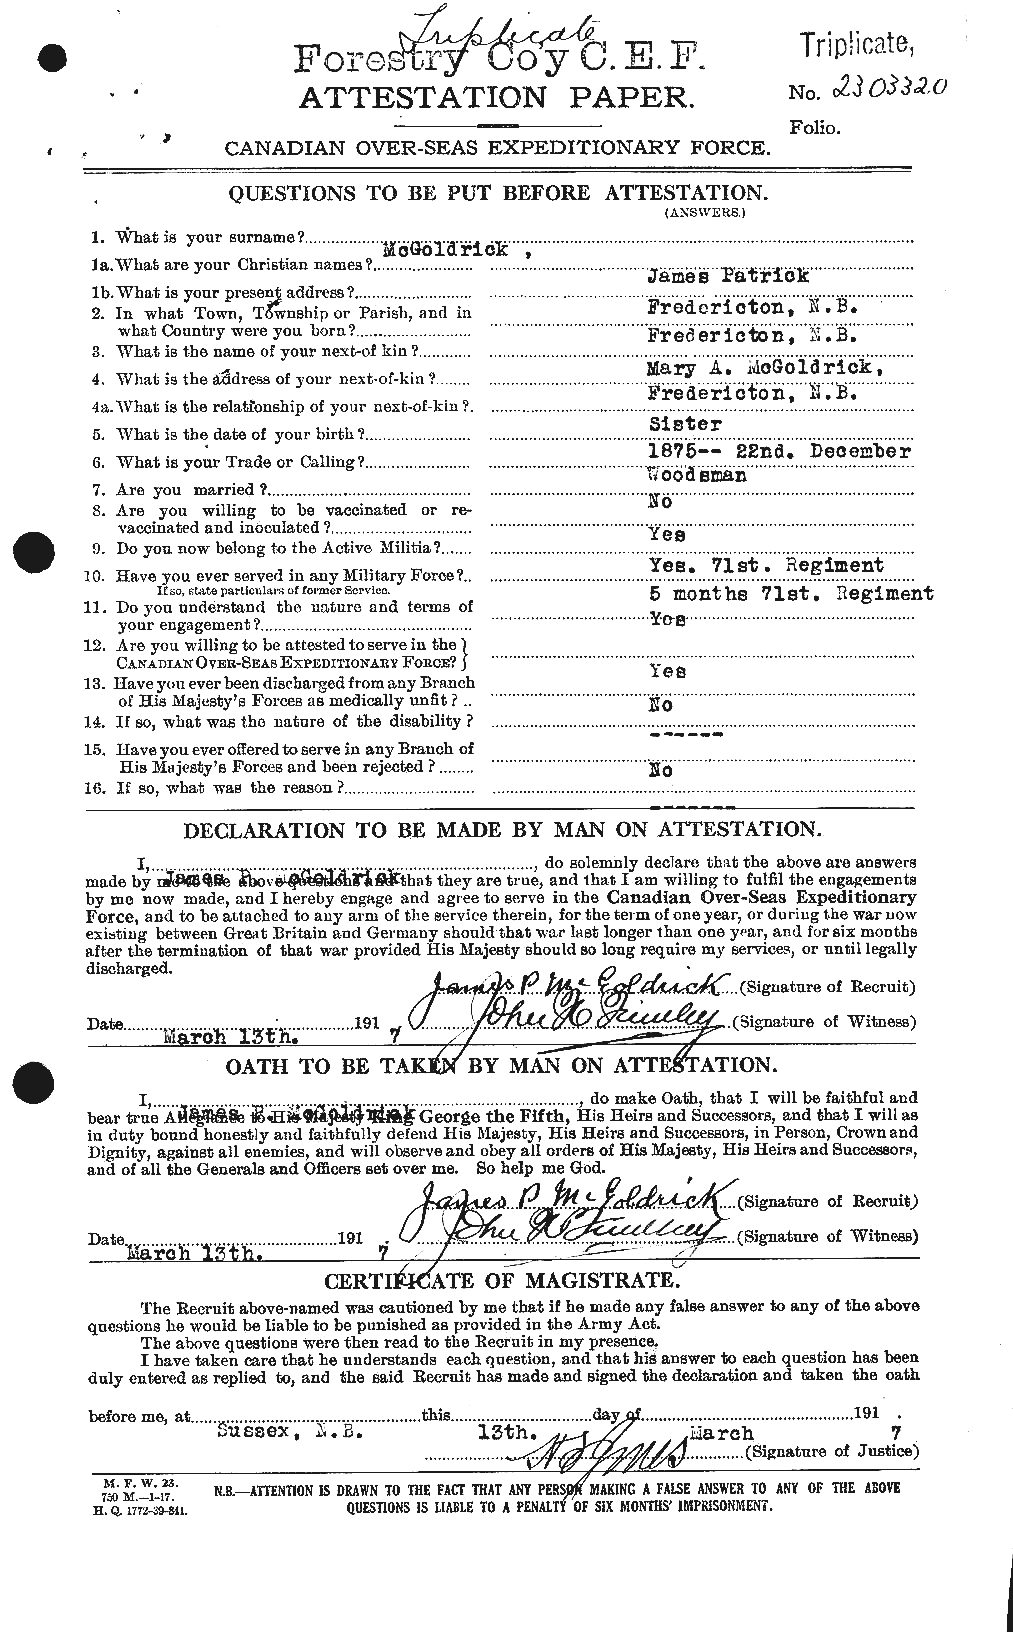 Dossiers du Personnel de la Première Guerre mondiale - CEC 528473a